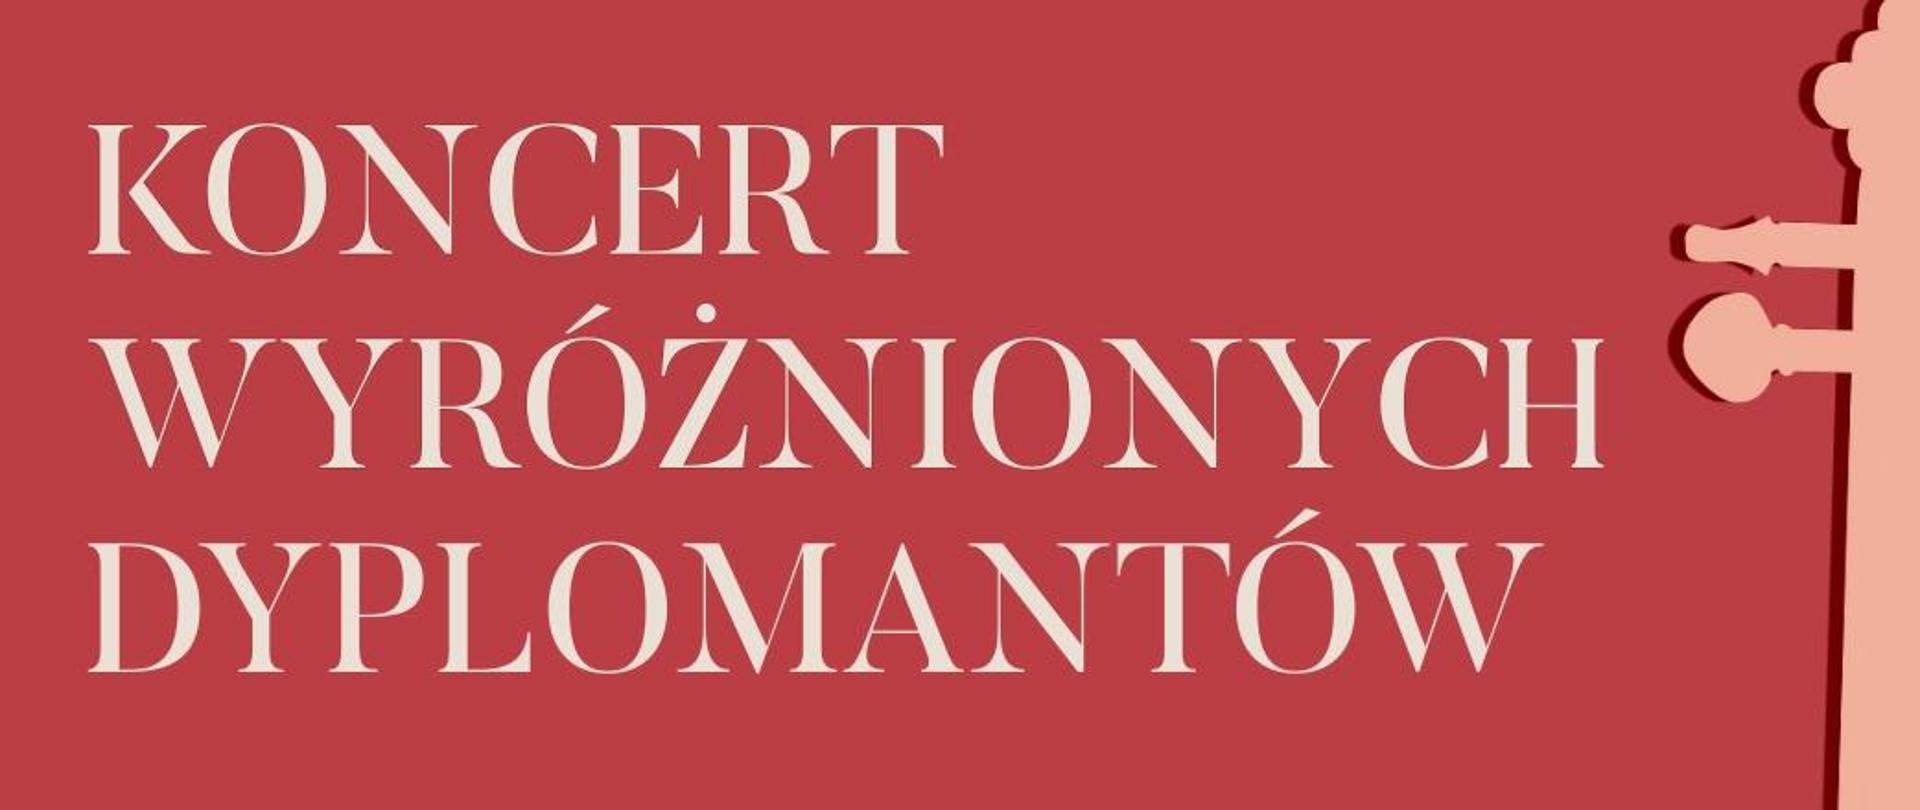 Biały napis "Koncert wyróżnionych dyplomantów" na różowym tle. Po prawej stronie ikona fragmentu instrumentu muzycznego.